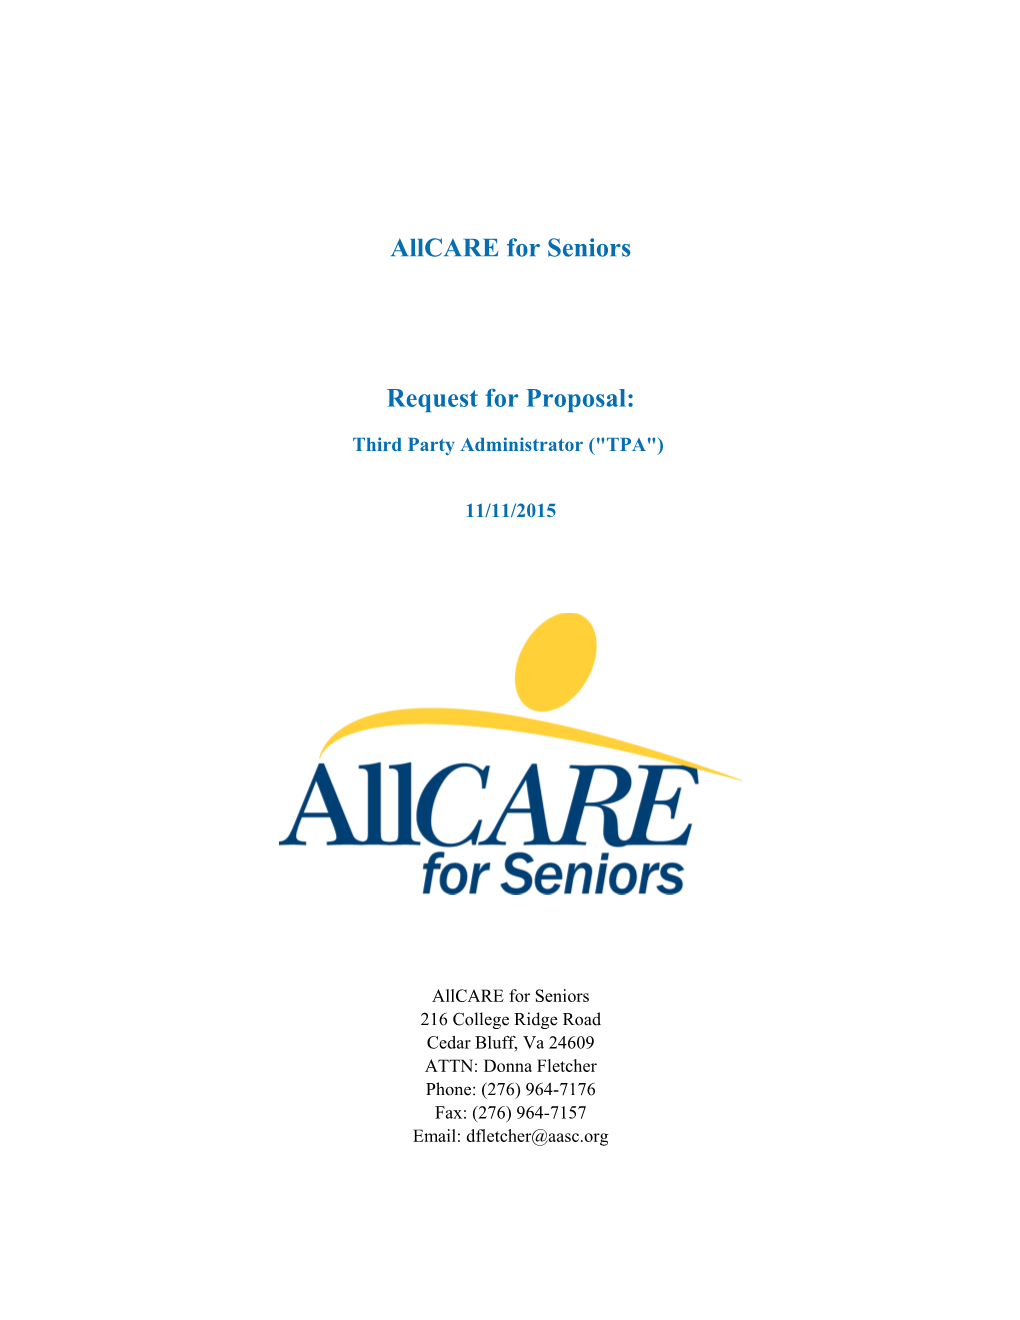 Allcare for Seniors